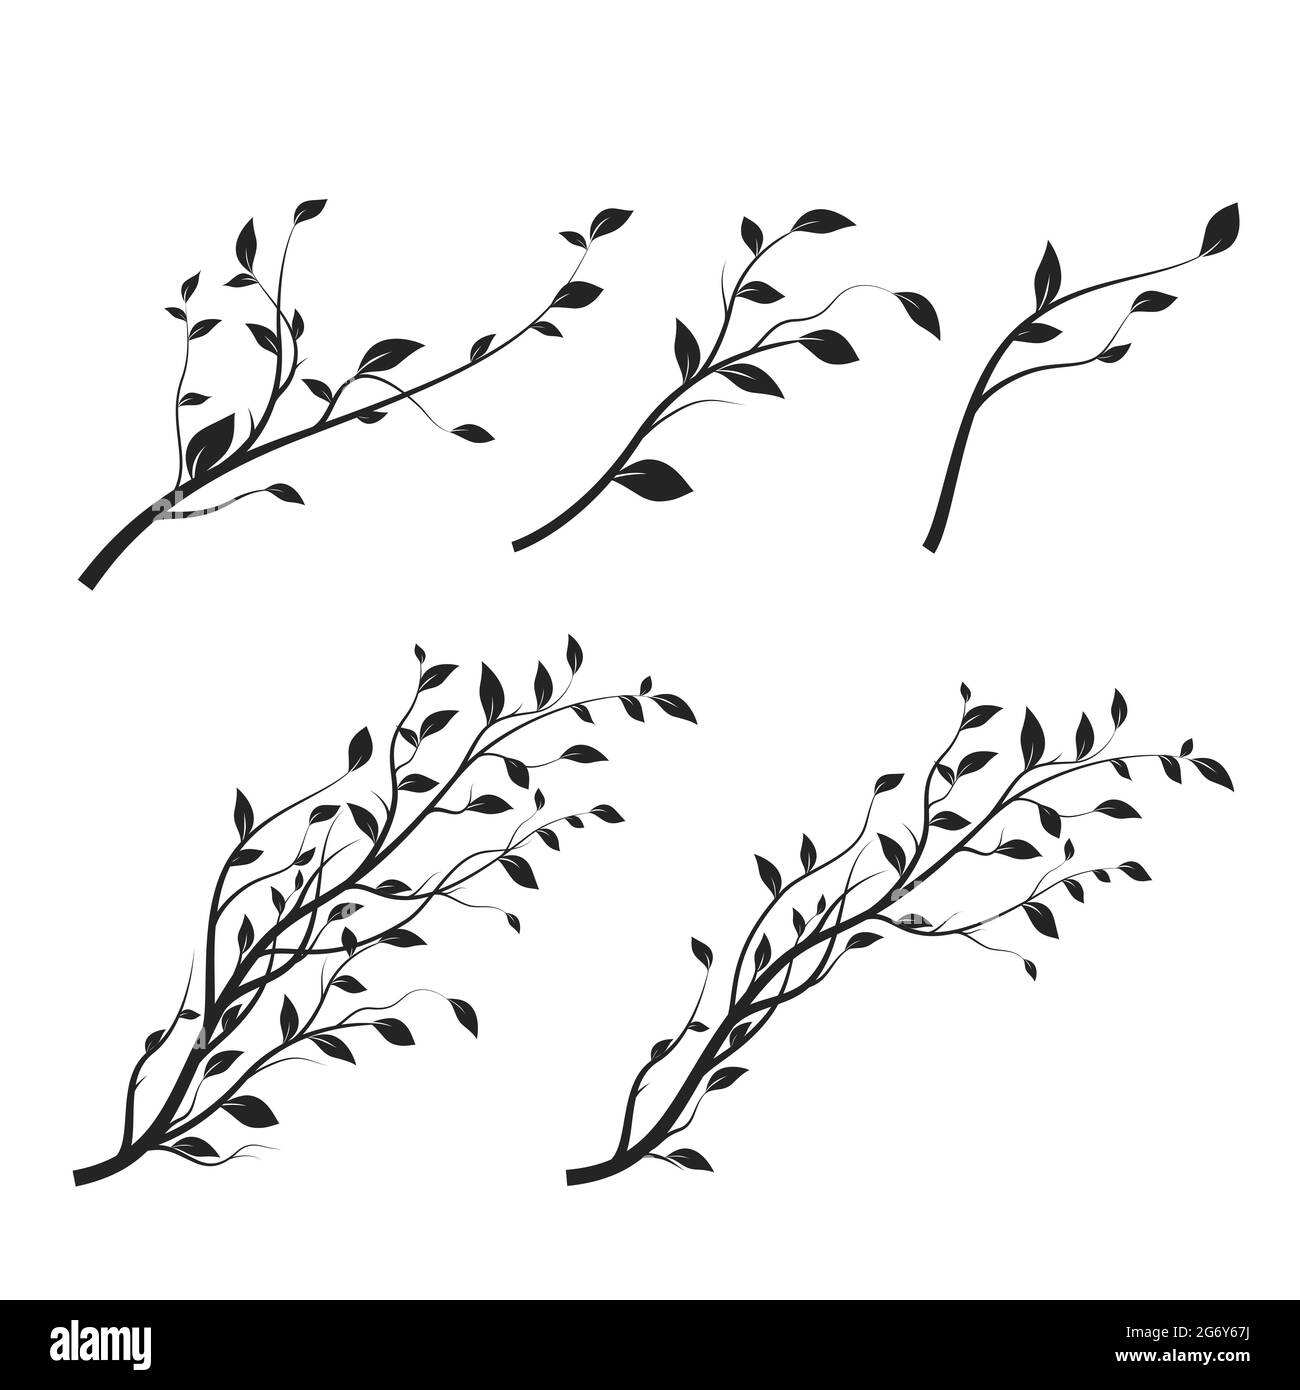 Satz von Baumverzweigungen. Ast Silhouette isoliert auf weißem Hintergrund mit einer Menge von Blättern. Vektorgrafik Stock Vektor